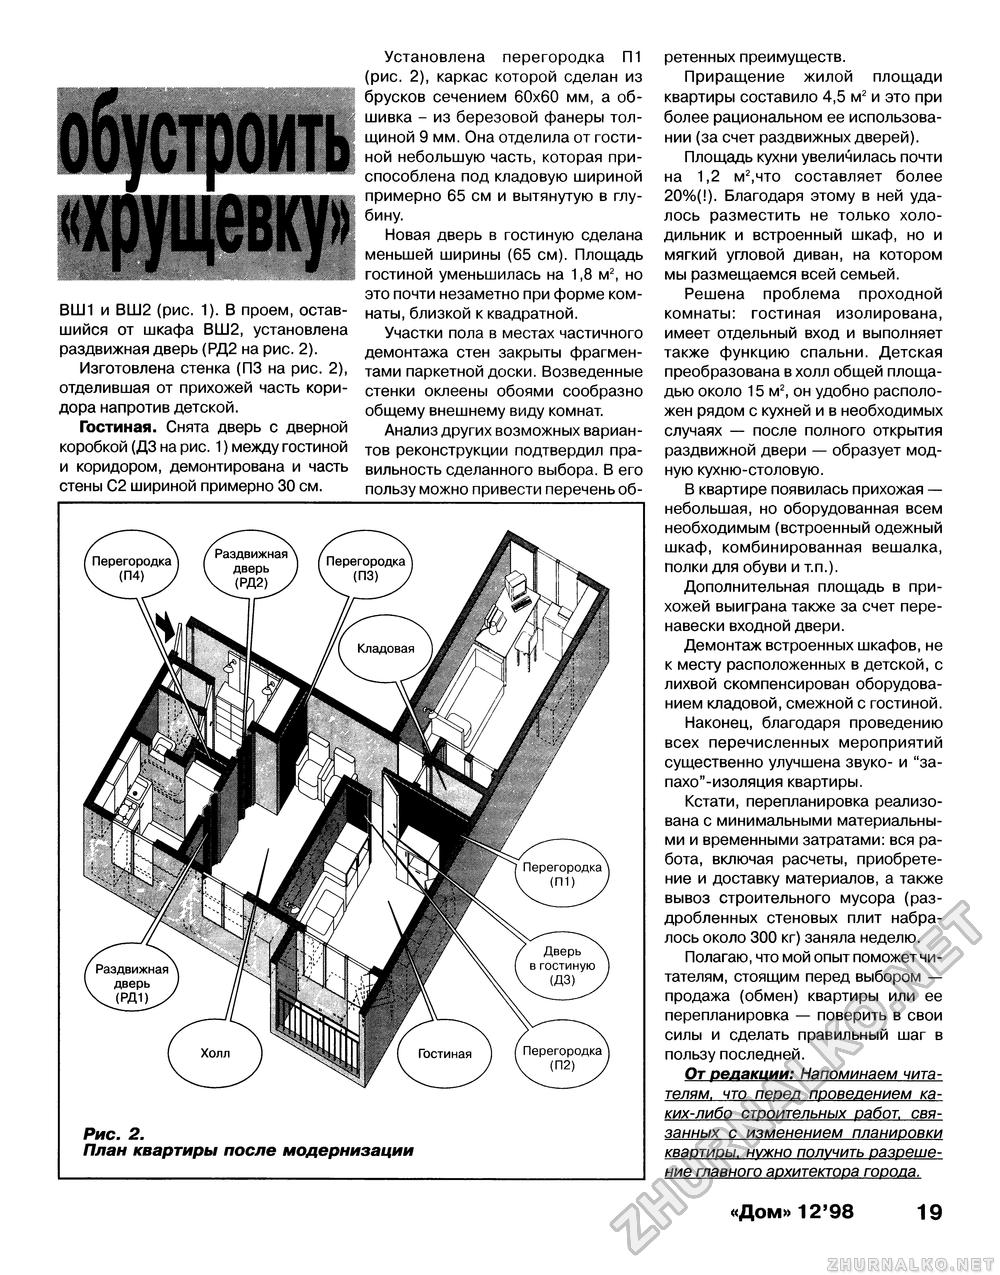 Дом 1998-12, страница 19